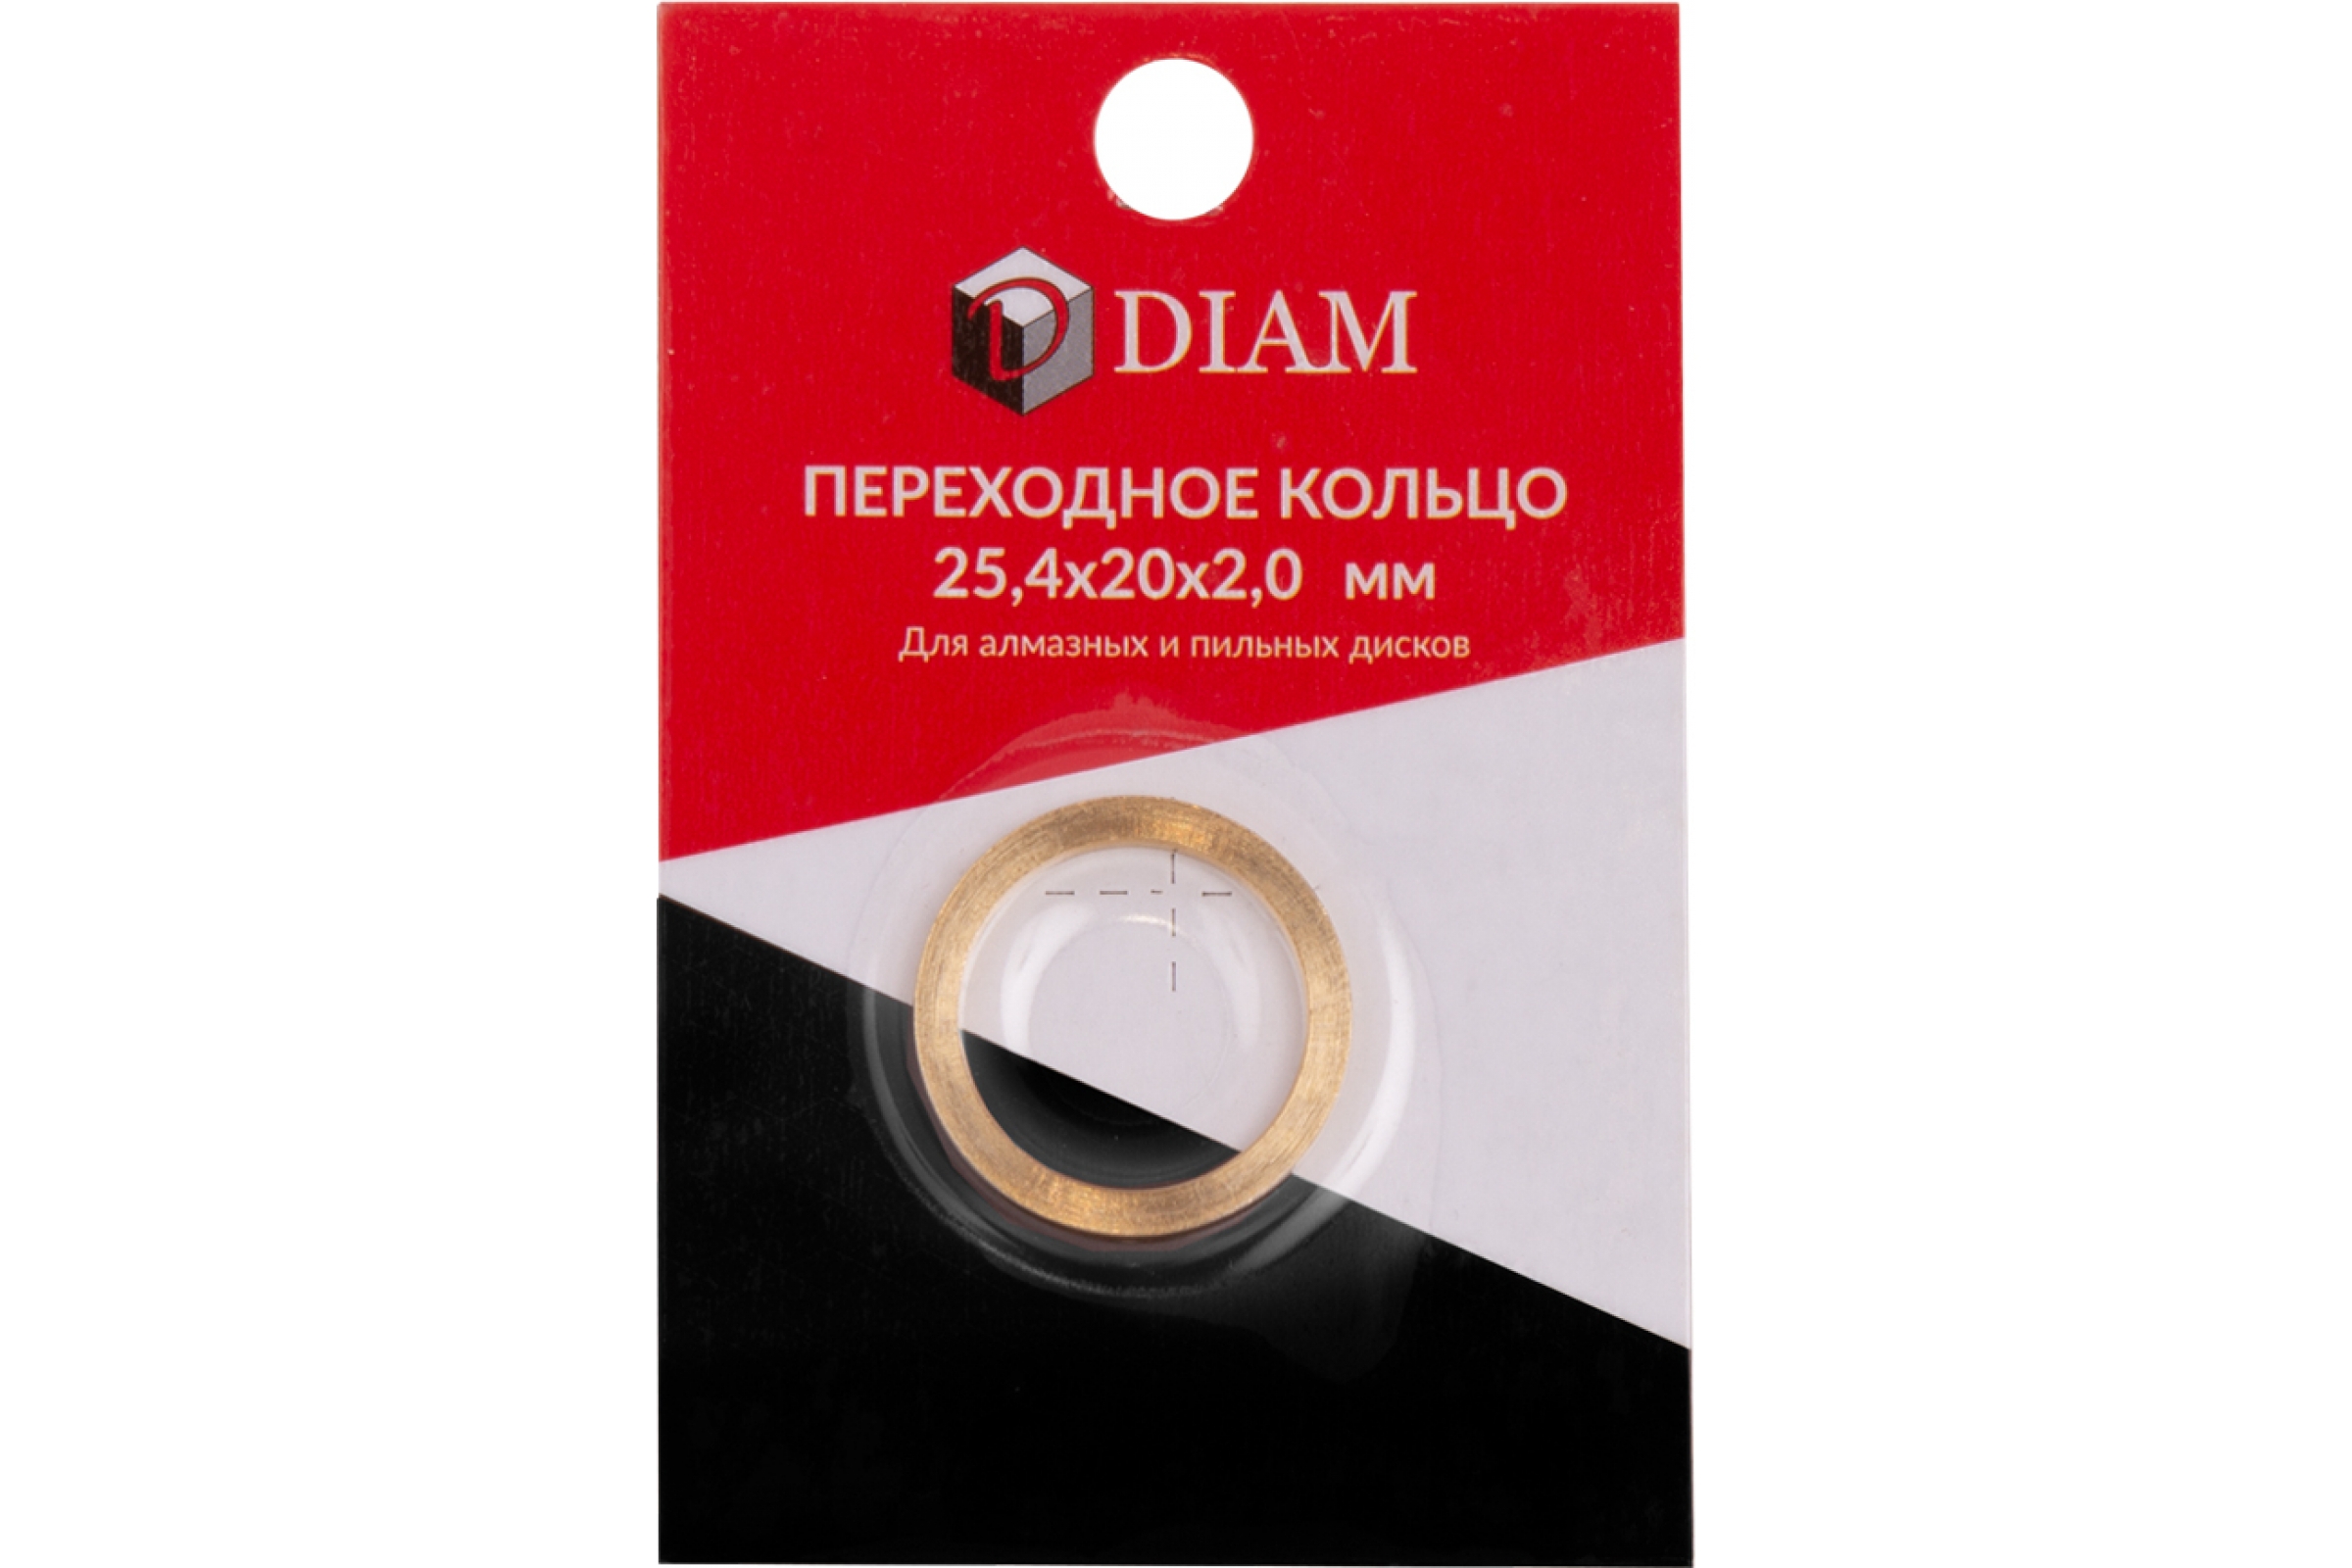 Кольцо переходное DIAM 25,4х20х2,0 (640083) (DIAM) переходное кольцо diam